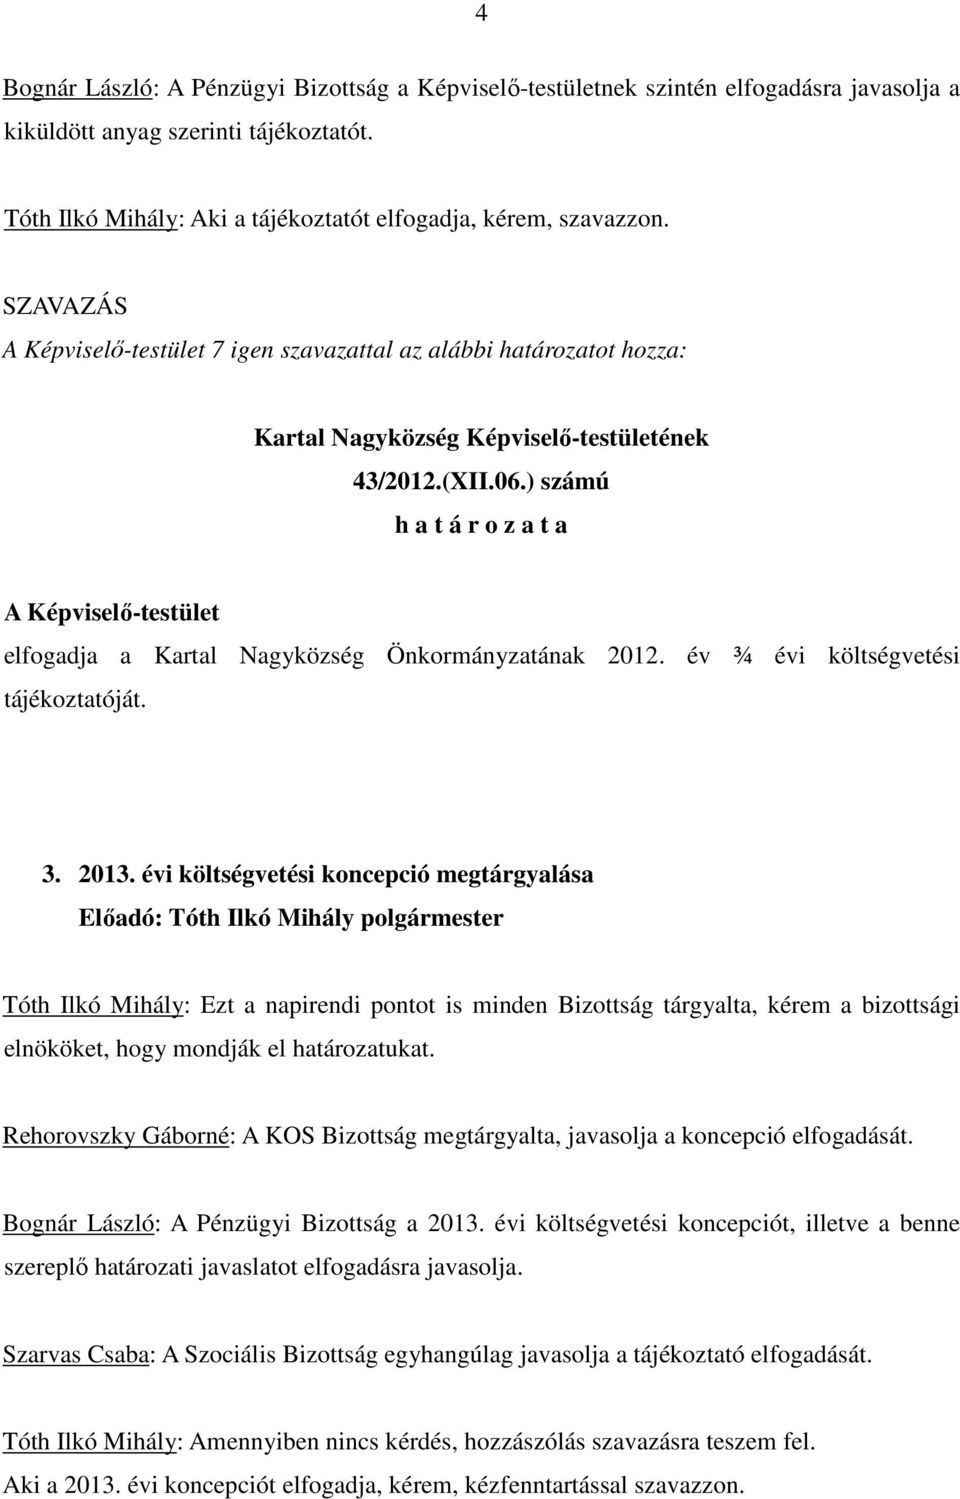 ) számú h a t á r o z a t a A Képviselı-testület elfogadja a Kartal Nagyközség Önkormányzatának 2012. év ¾ évi költségvetési tájékoztatóját. 3. 2013.